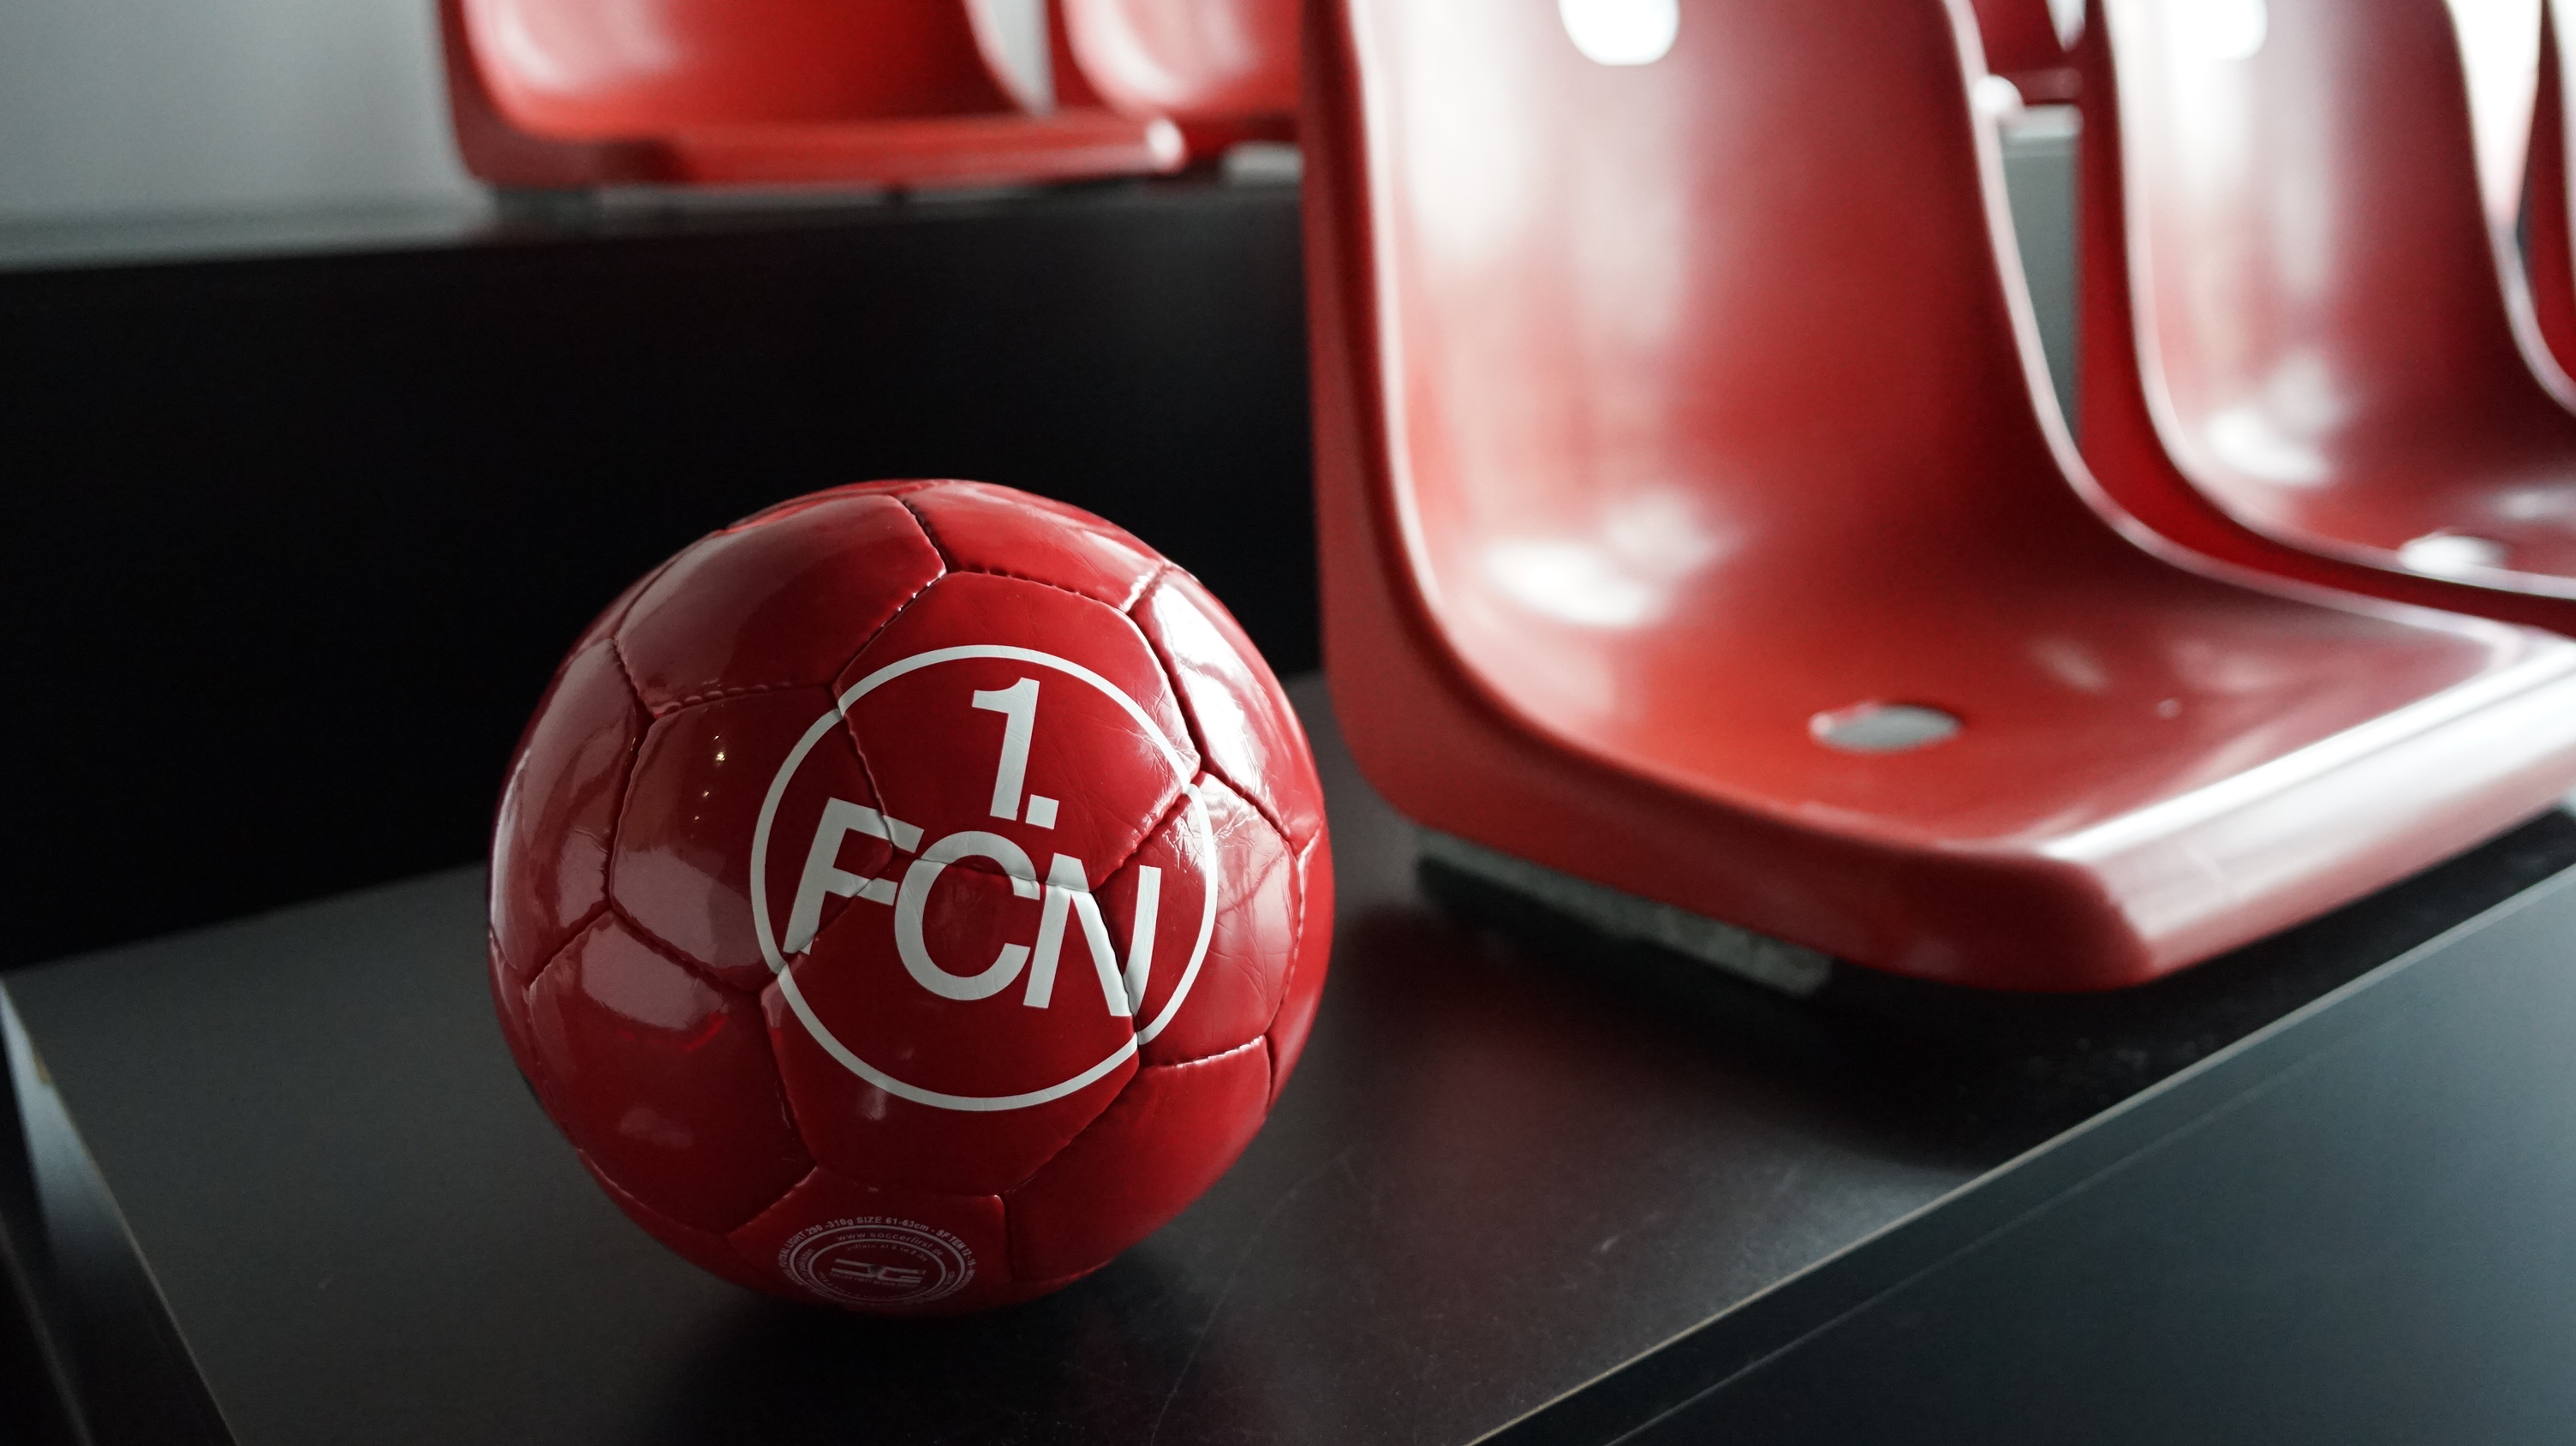 Ball im FCN-Design